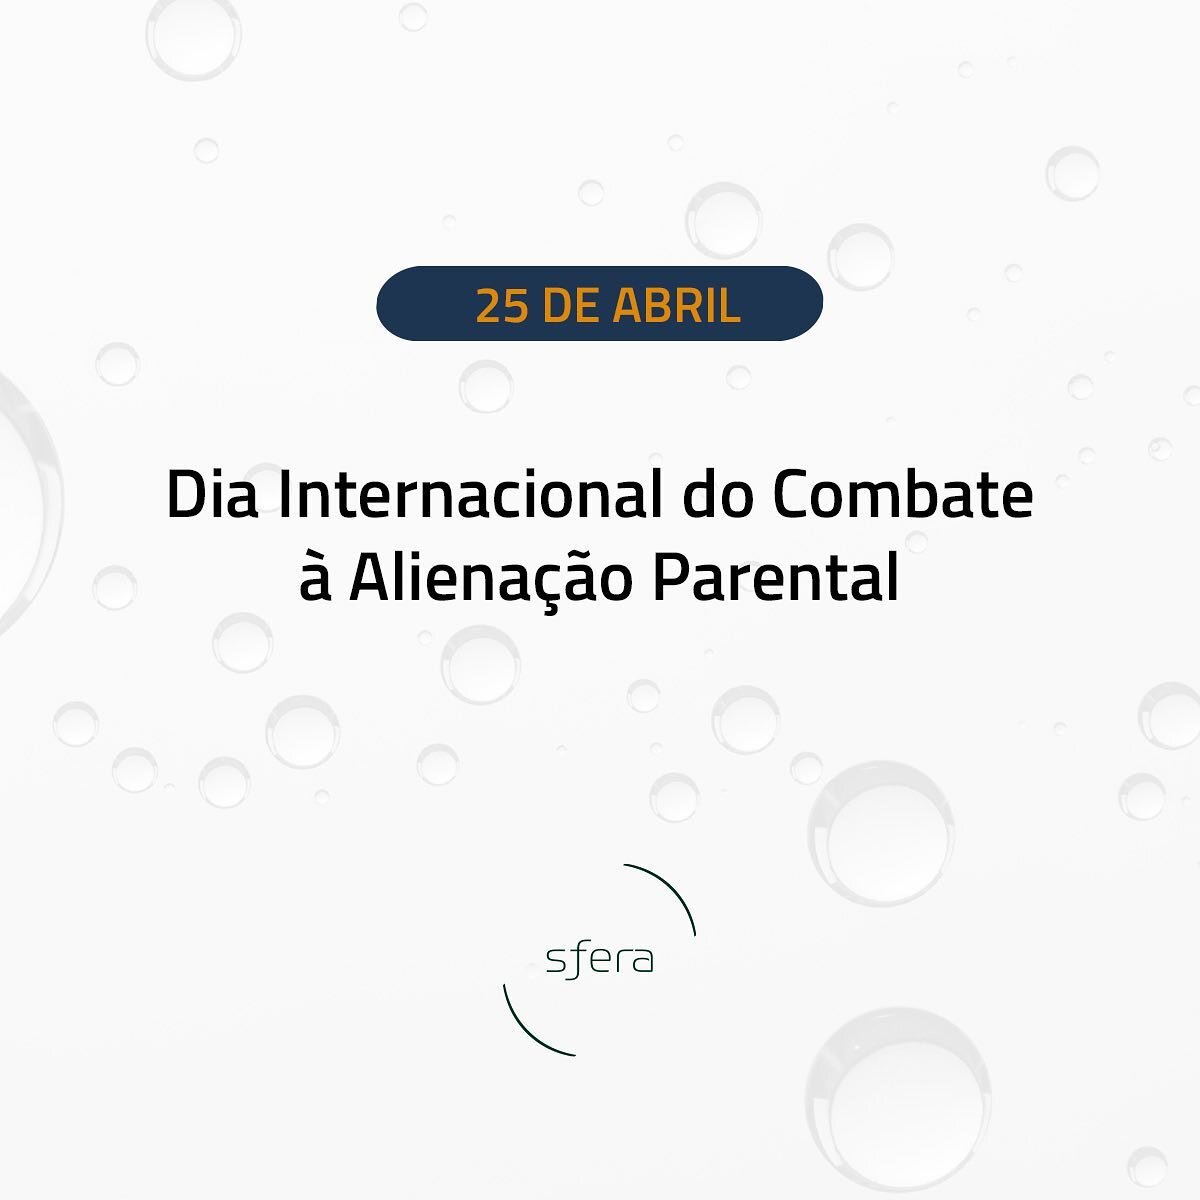 Hoje, 25 de abril, &eacute; o Dia Internacional de Combate &agrave; Aliena&ccedil;&atilde;o Parental. No Brasil, a Lei 12.318/2010 foi criada como forma de detectar e combater essa pr&aacute;tica, servindo de instrumento importante para a prote&ccedi